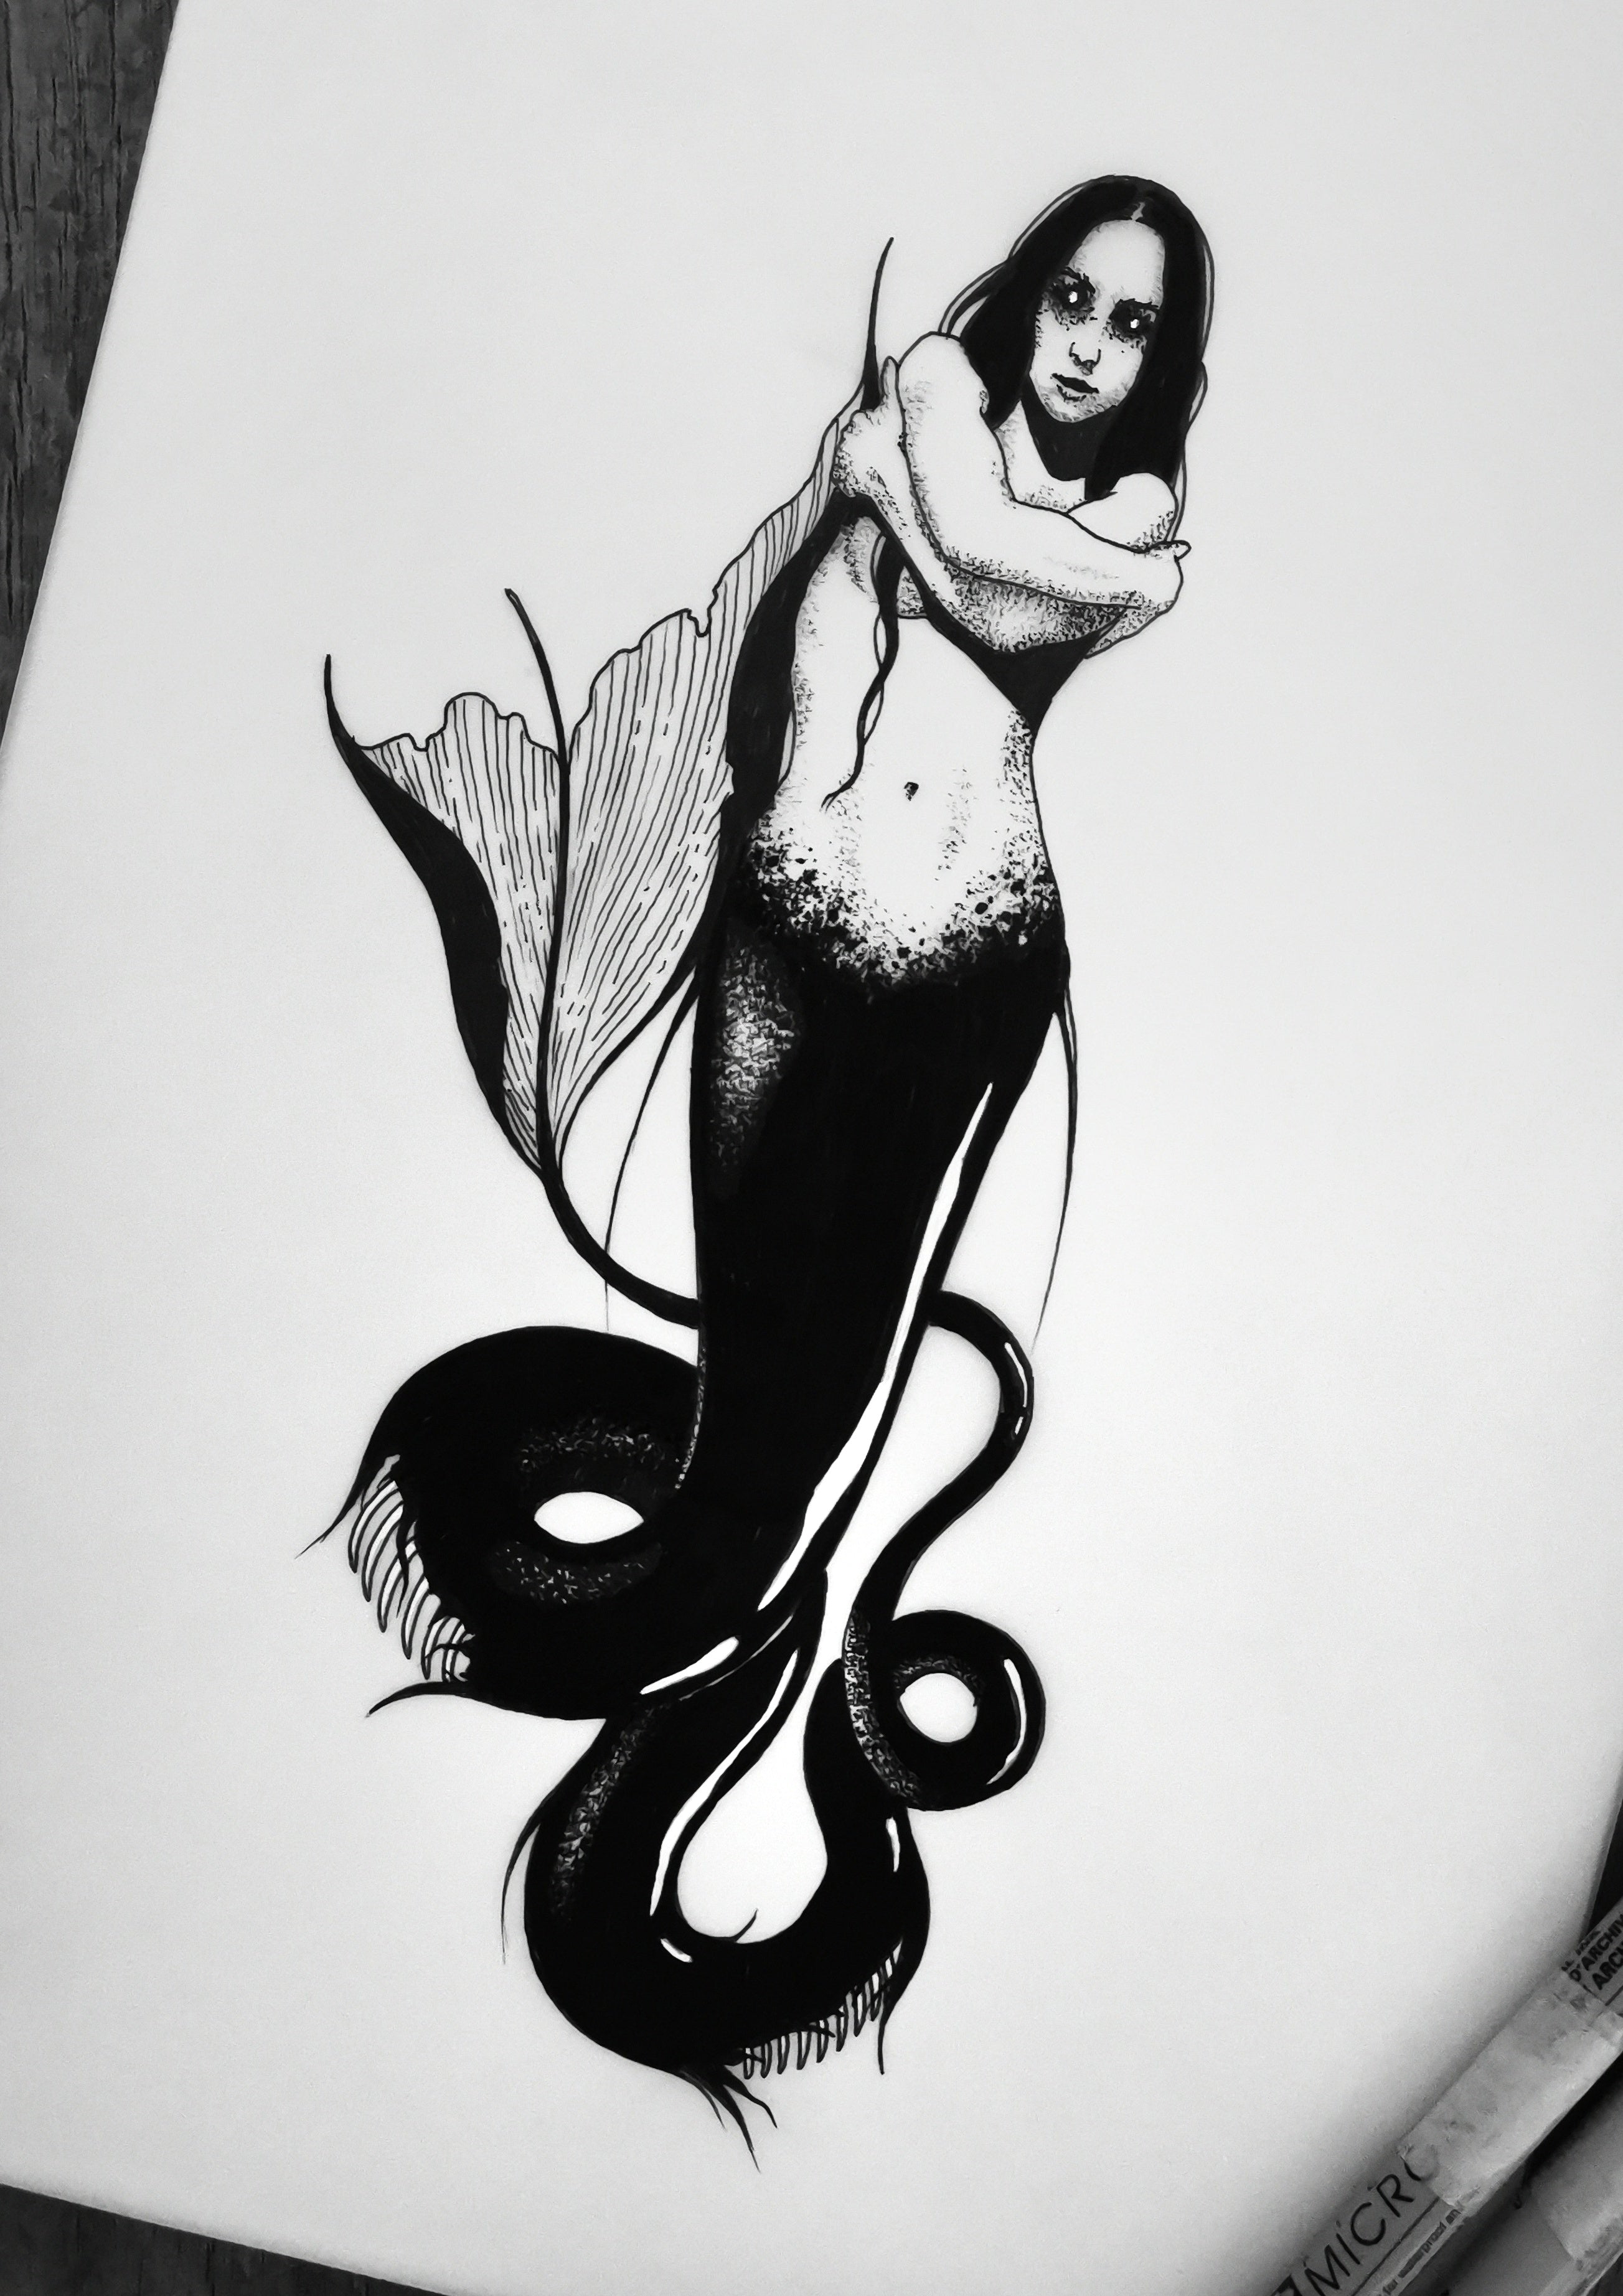 Demonic Mermaid Queen